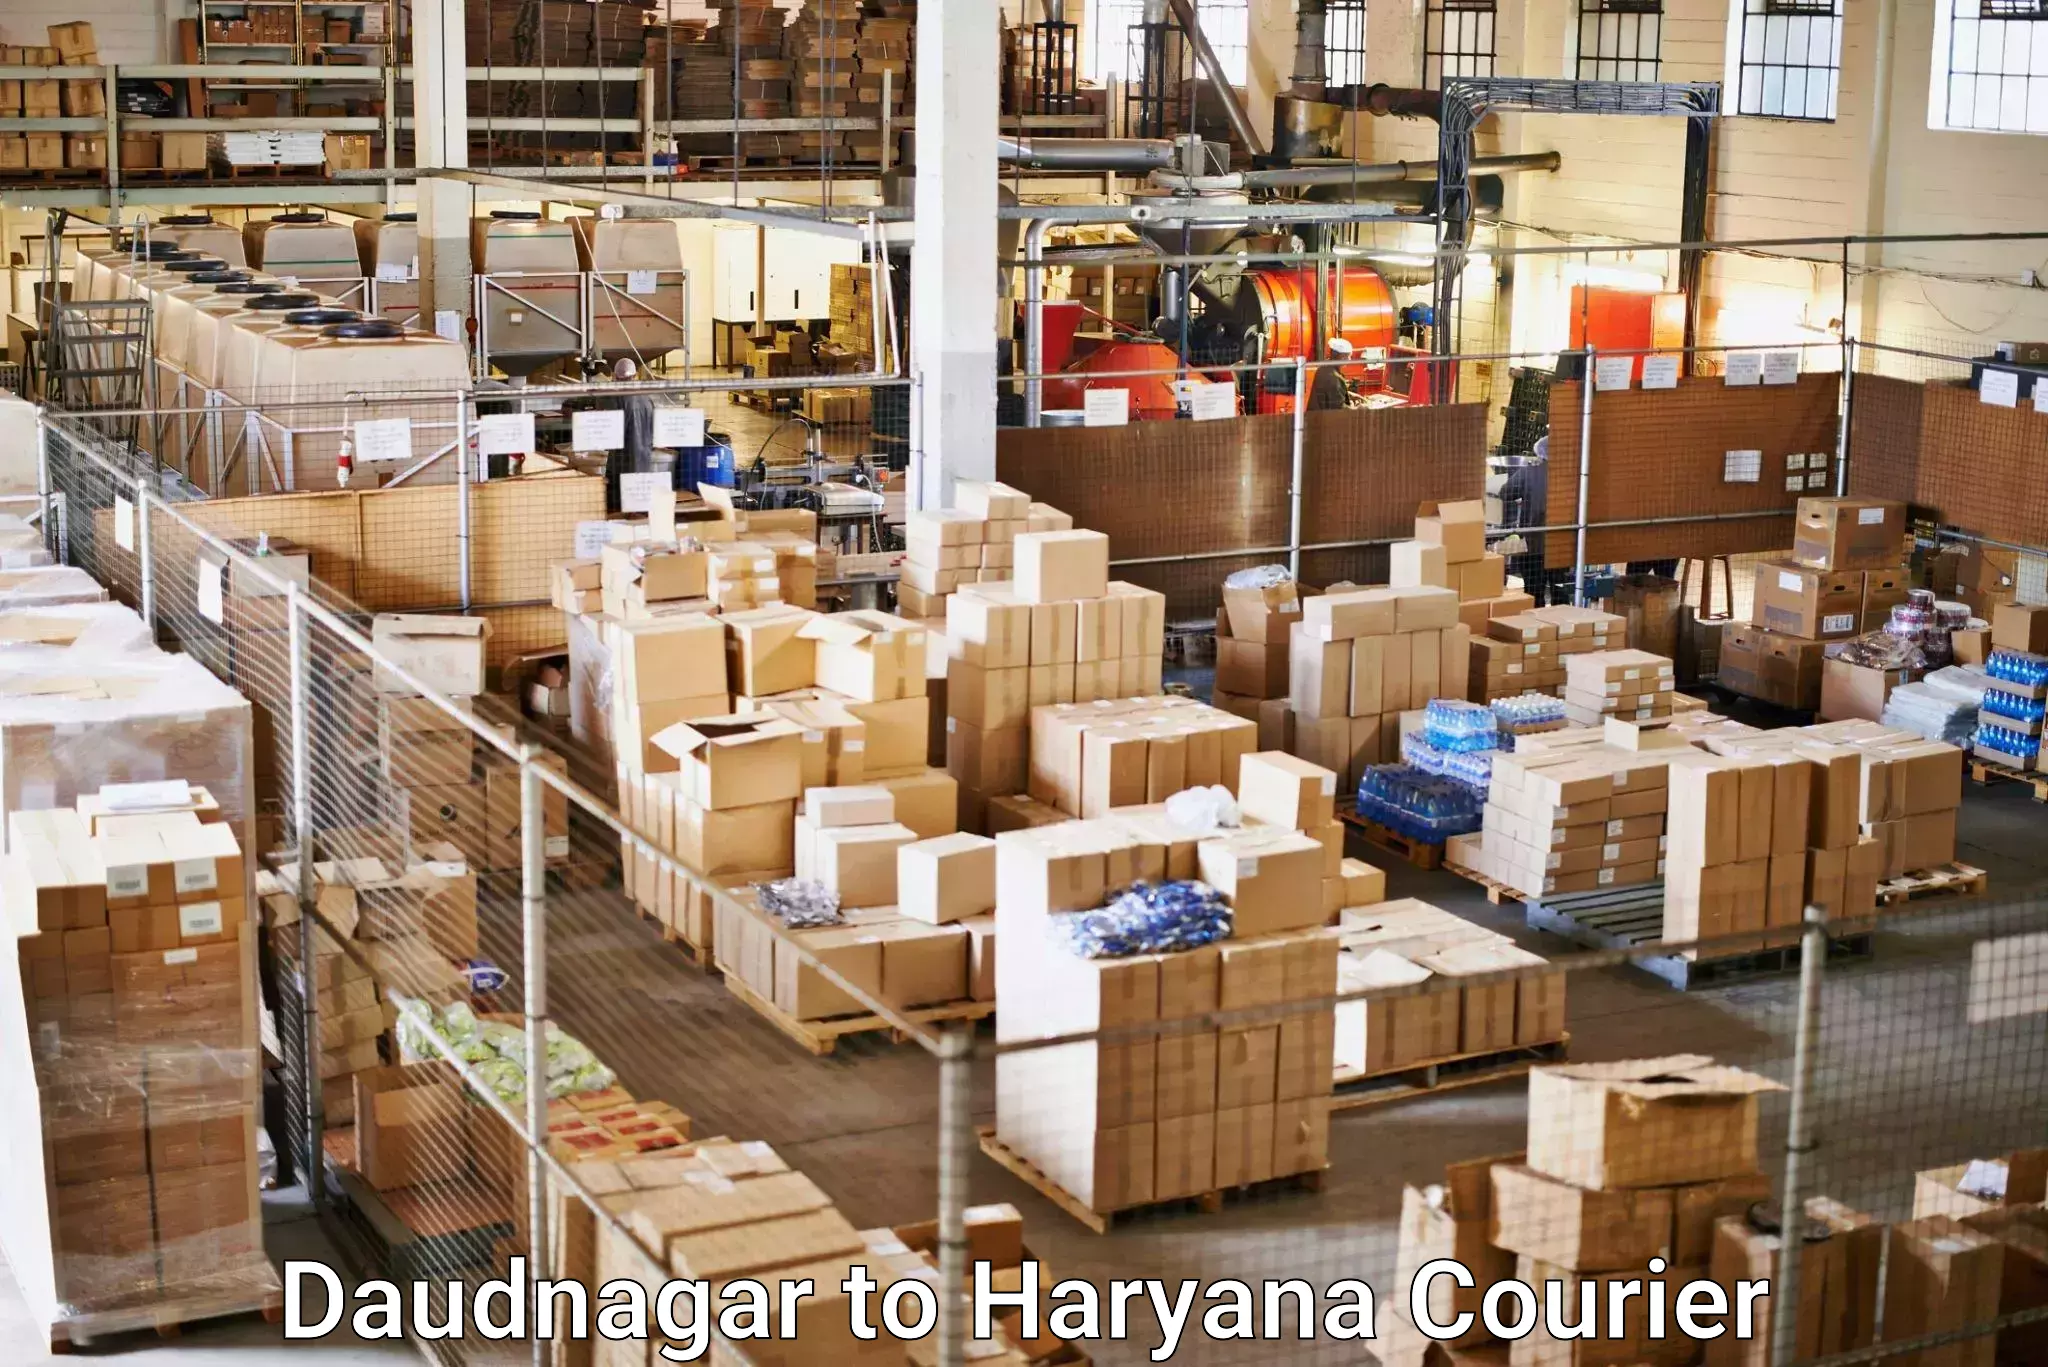 Digital courier platforms Daudnagar to Bahadurgarh